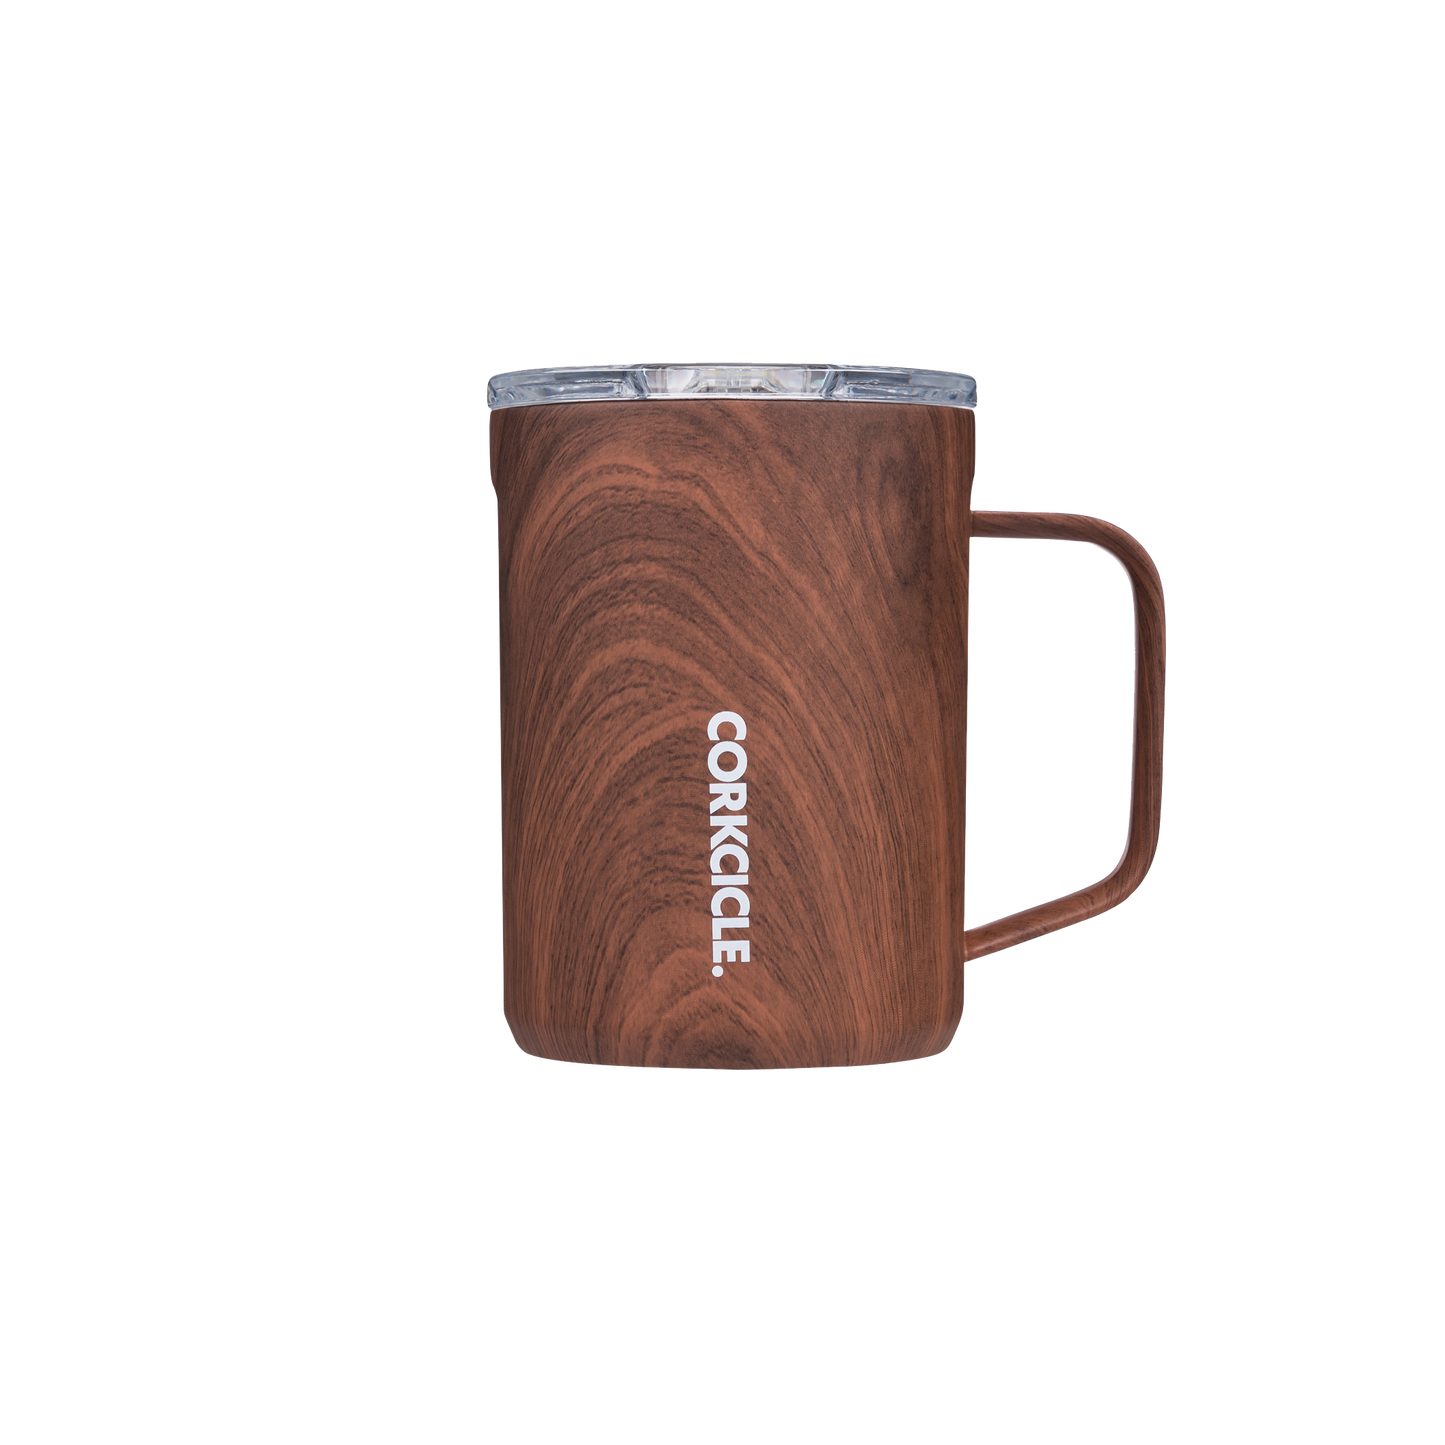 CORKCICLE 16 oz. Coffee Mug